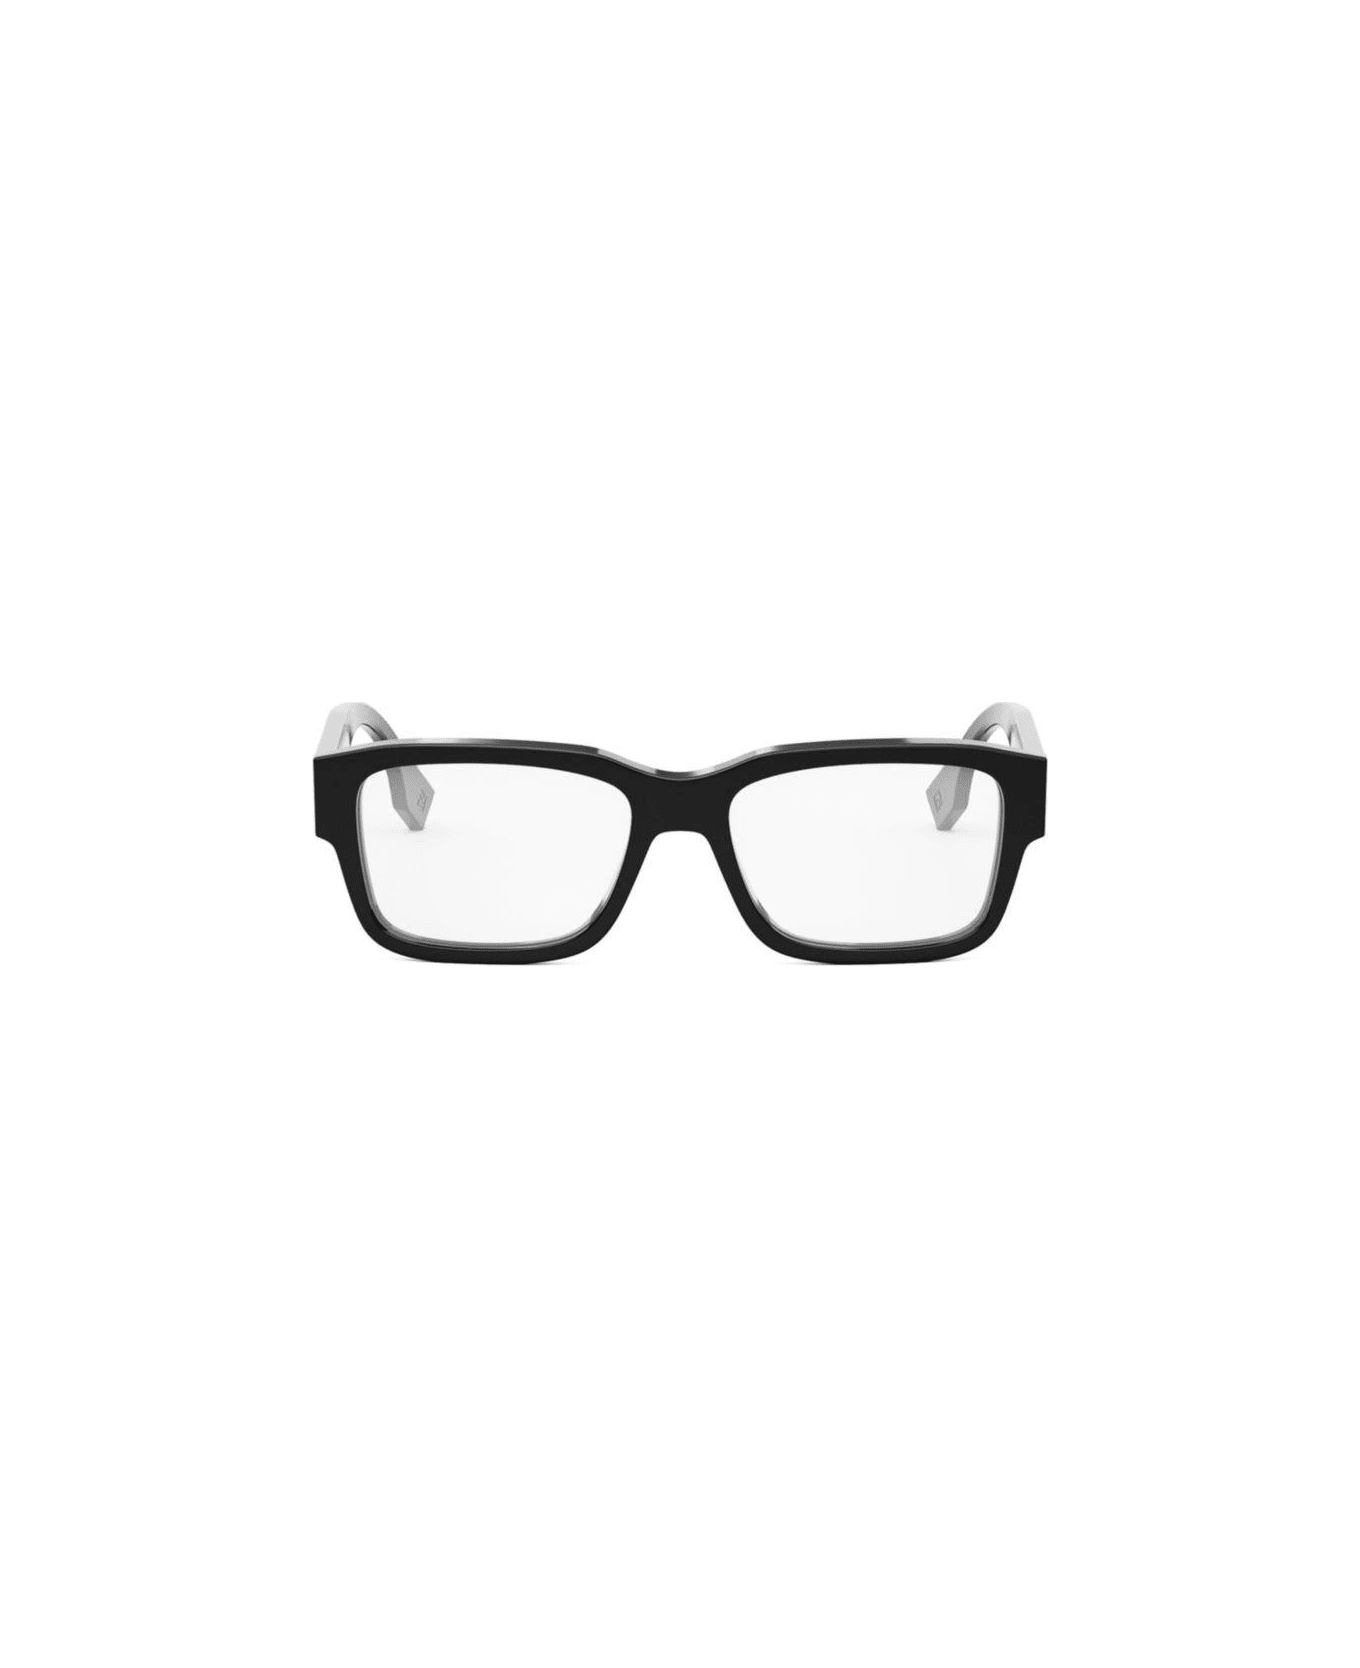 Fendi Eyewear Rectangle-frame Glasses - 001 アイウェア